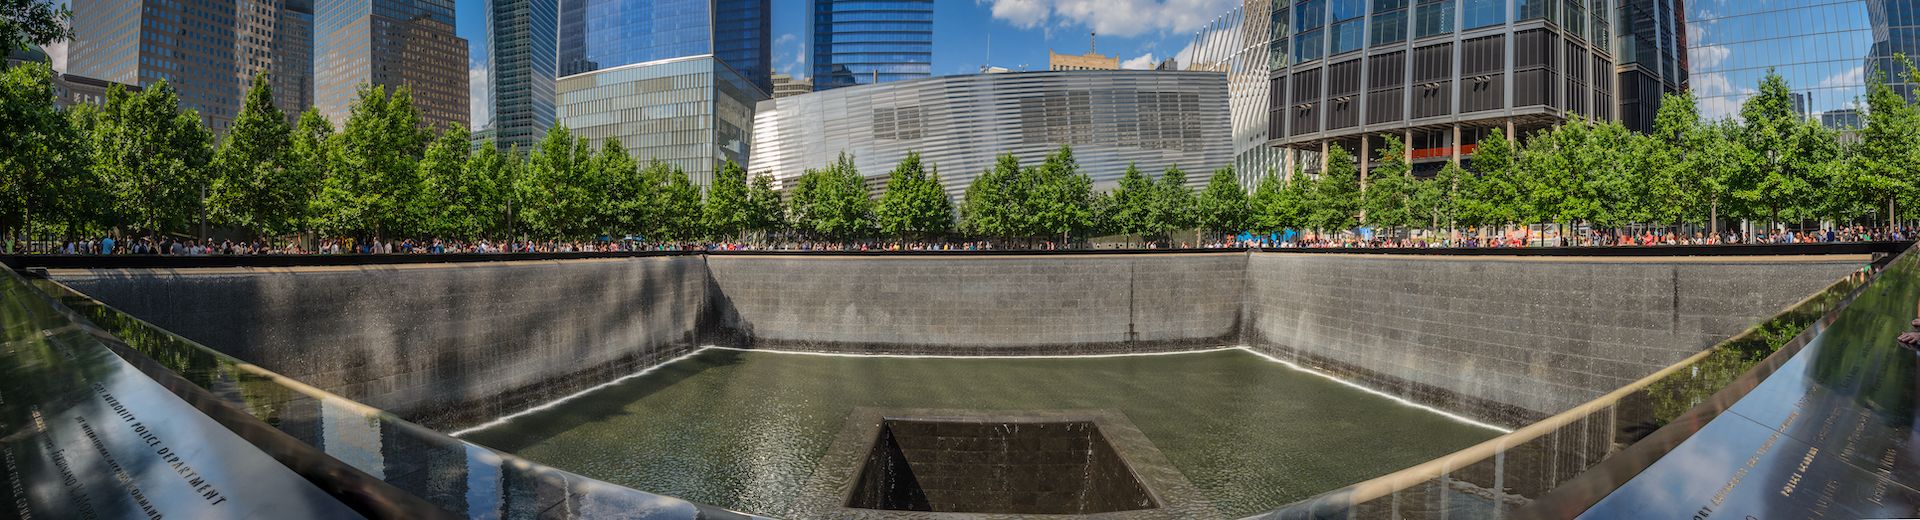 9/11 Memorial NYC 